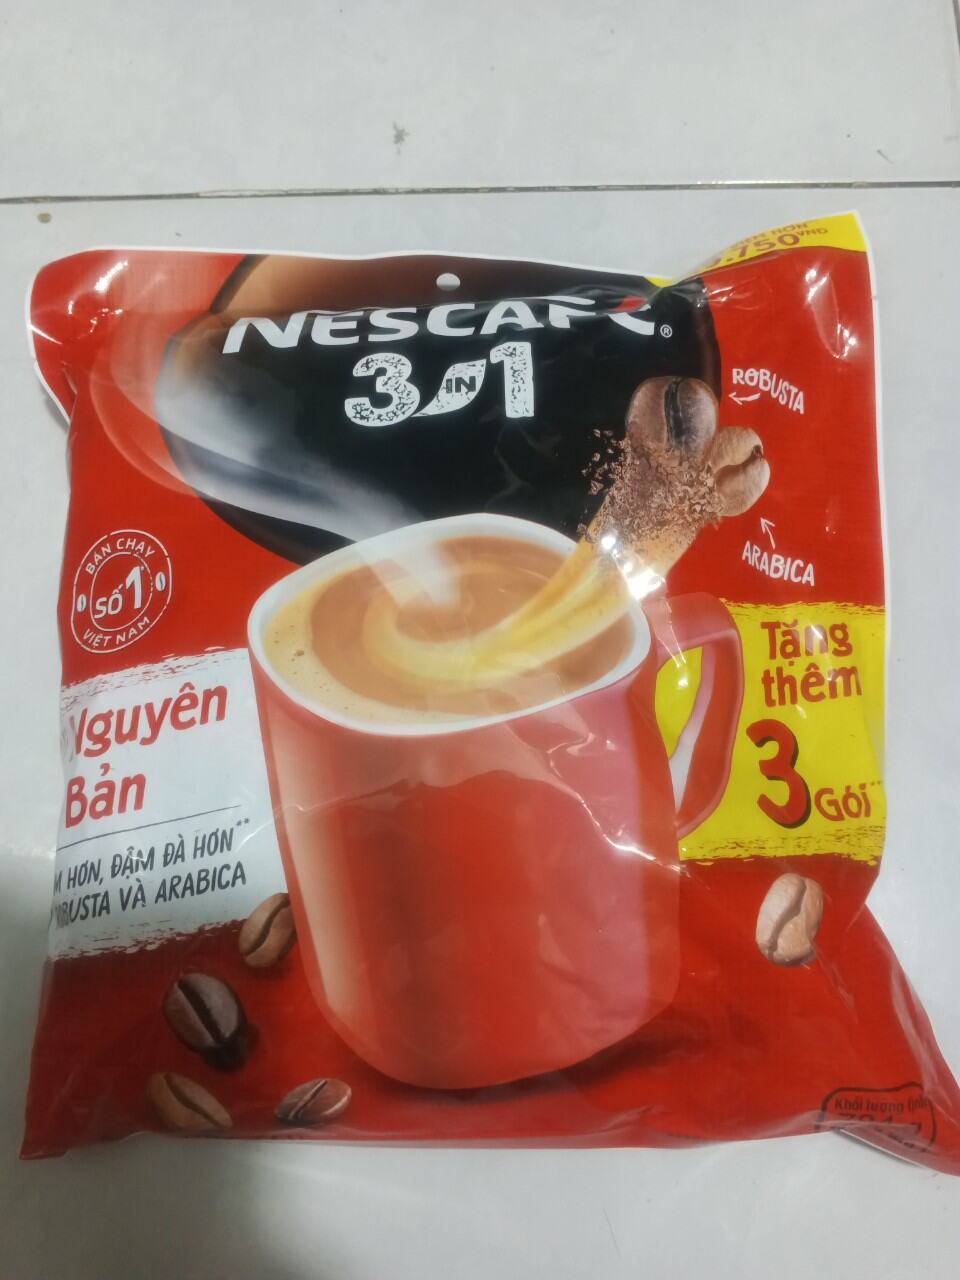 Cà phê sữa NesCafé 3 in 1 782g 46 gói x 17g đỏ tặng 3 goi